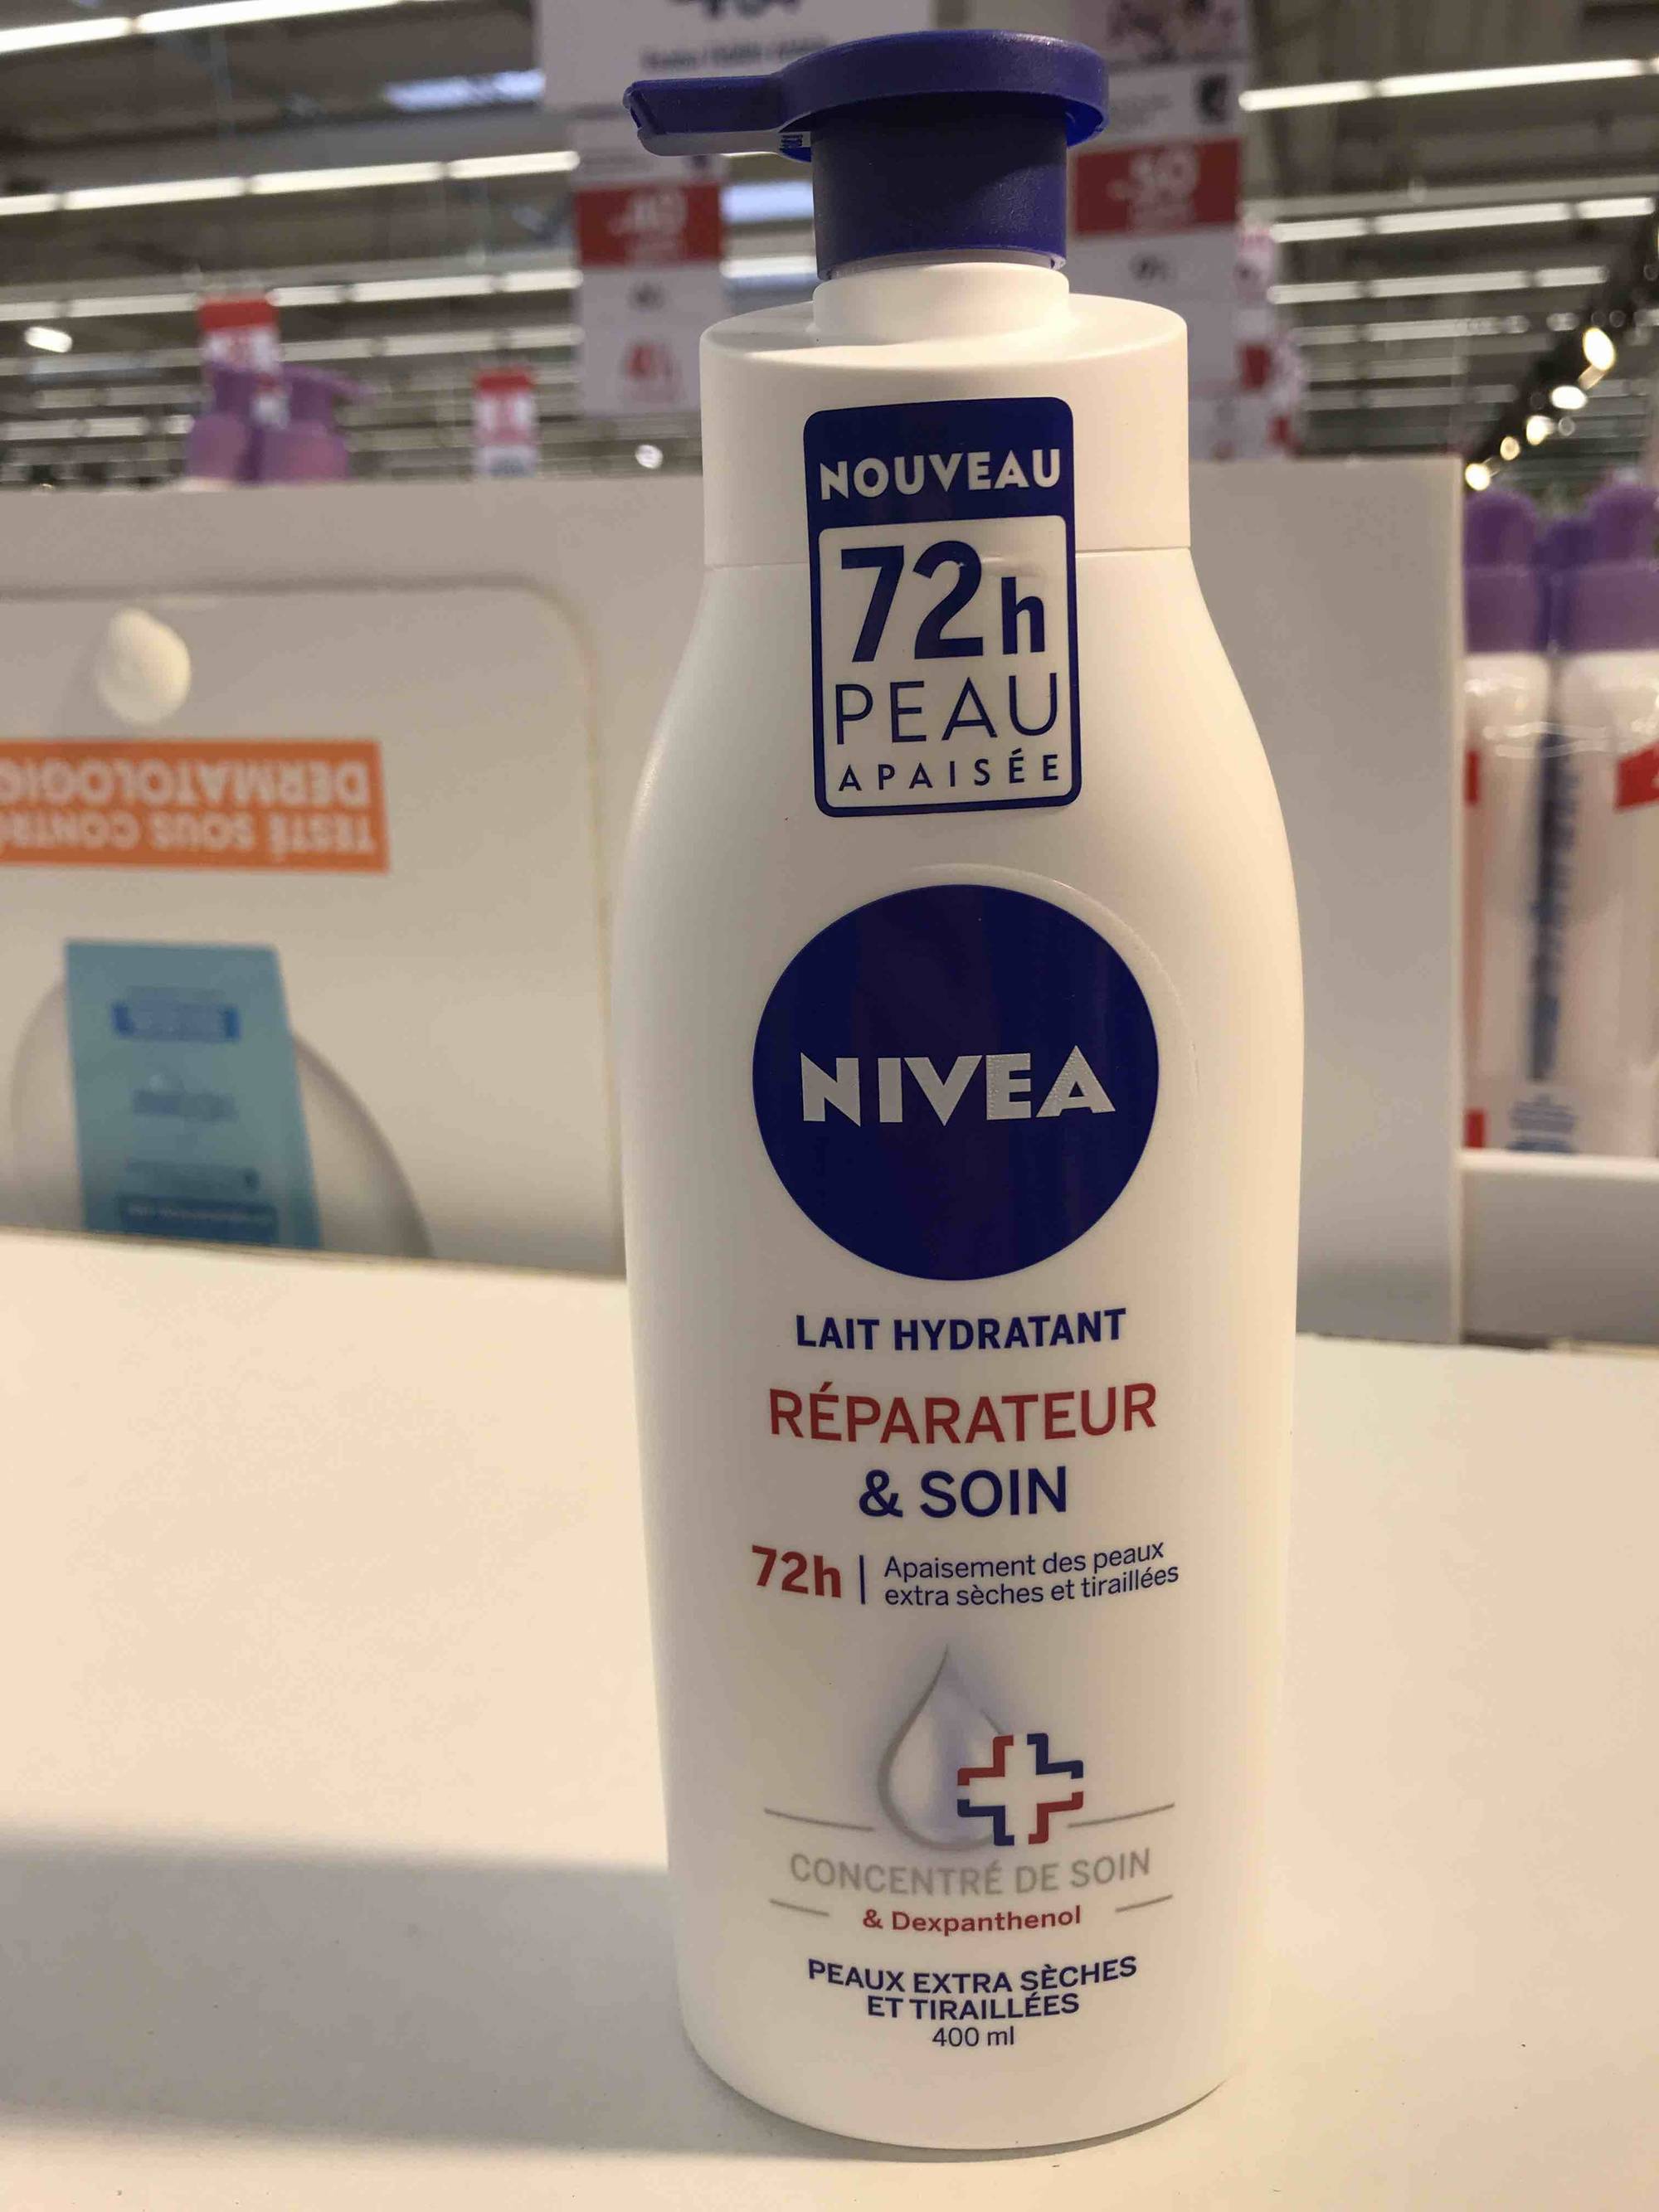 NIVEA - Lait hydratant réparateur & soin 72h